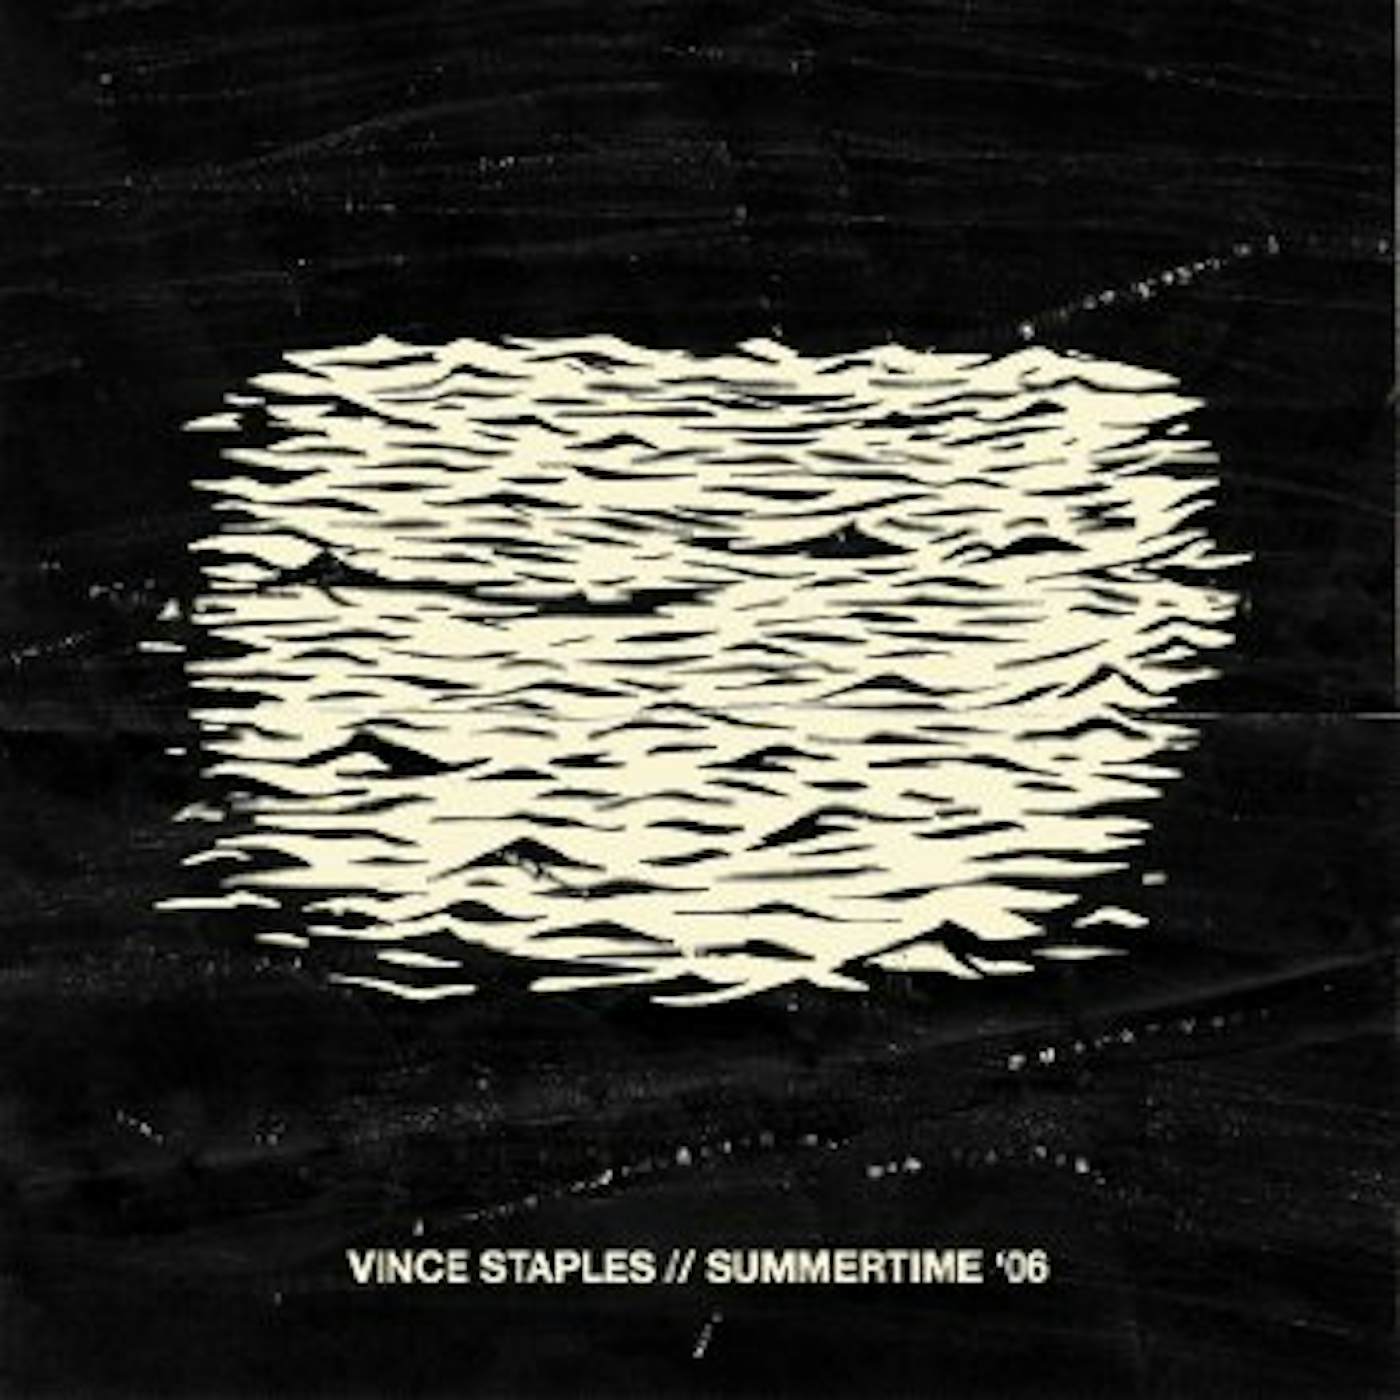 Vince Staples SUMMERTIME 06 CD